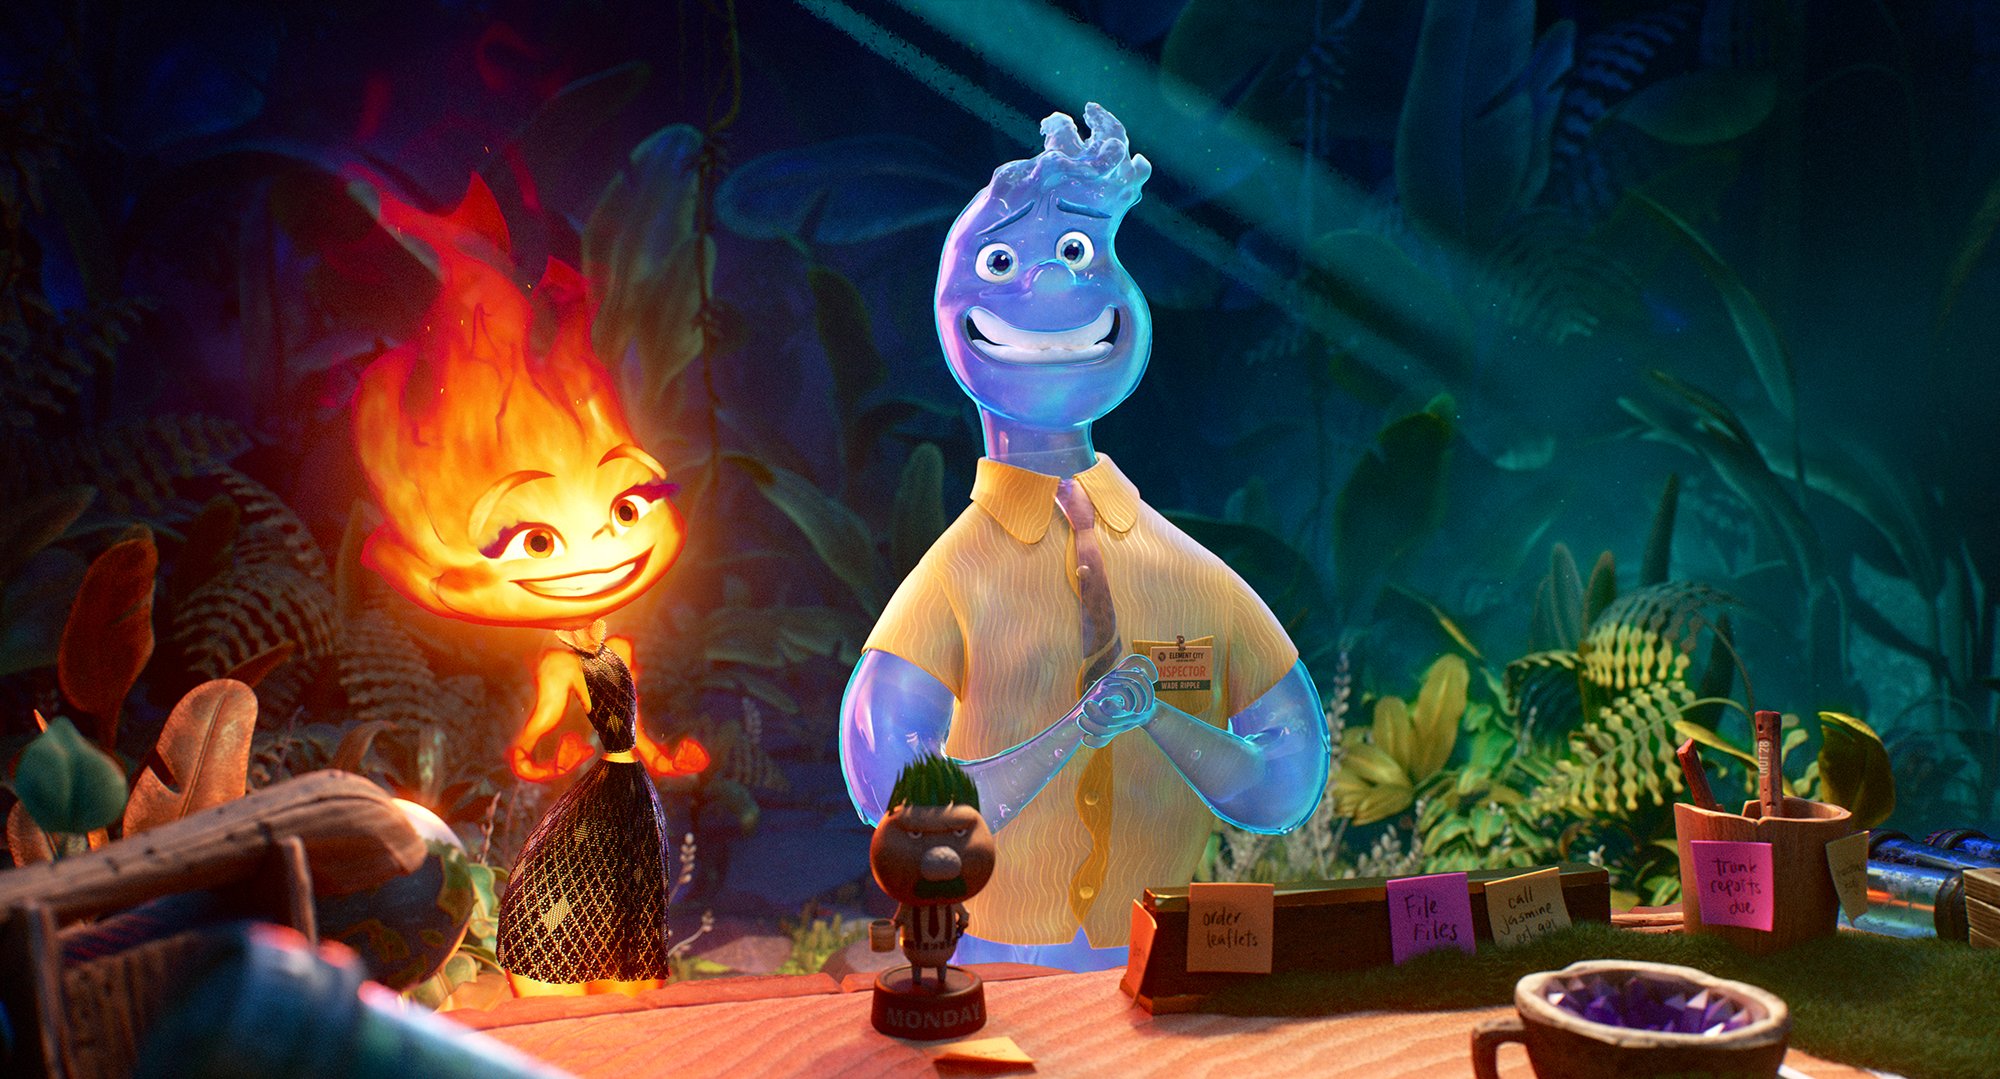 SourLemon 🍋 on X: Pixar has a announced their next animated